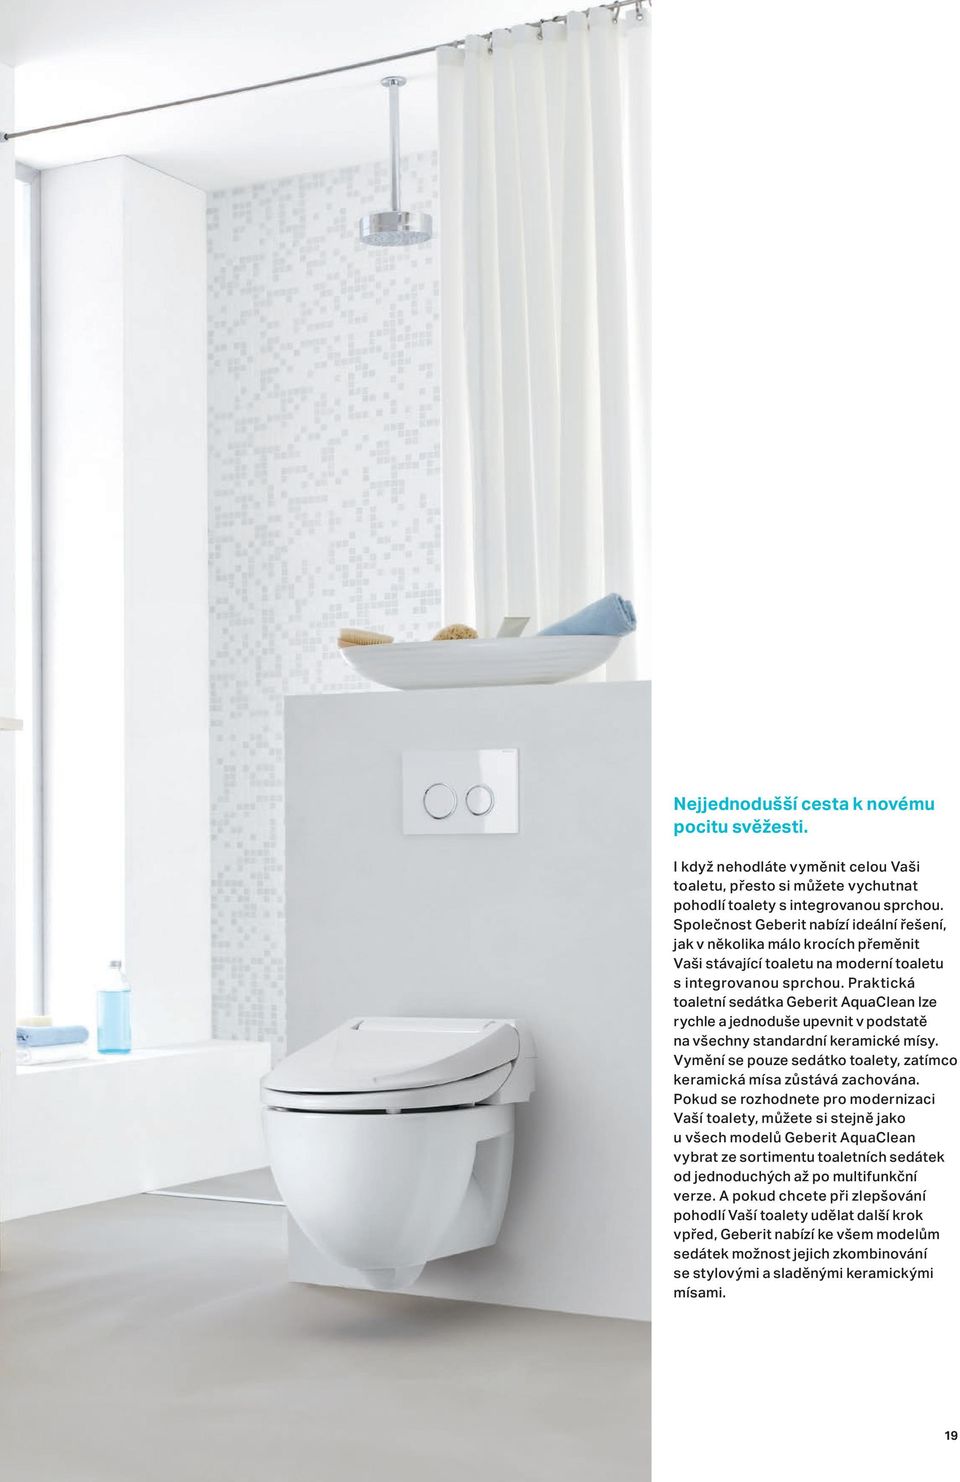 Praktická toaletní sedátka Geberit AquaClean lze rychle a jednoduše upevnit v podstatě na všechny standardní keramické mísy. Vymění se pouze sedátko toalety, zatímco keramická mísa zůstává zachována.